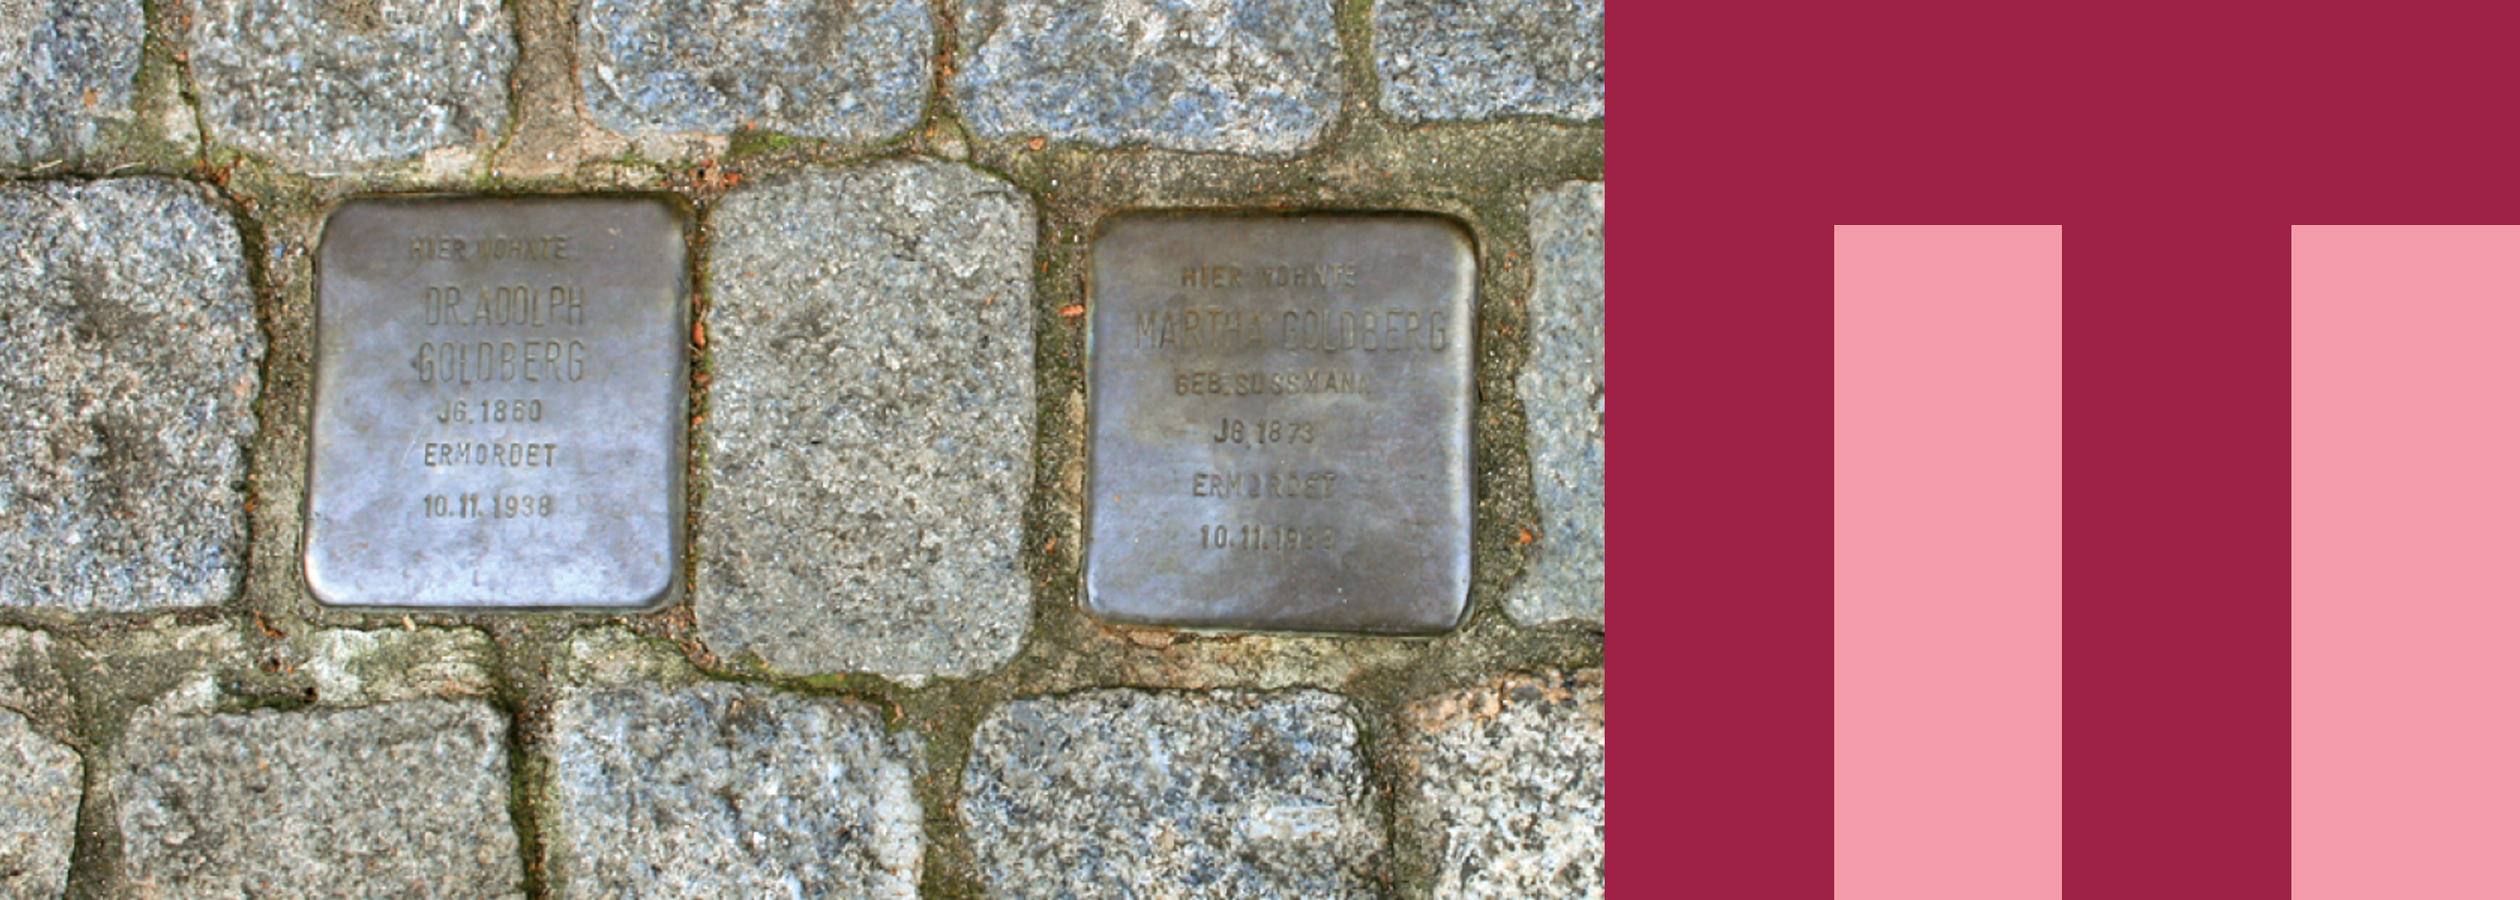 Zwei Pflastersteine mit Inschrift, sogenannte Stolpersteine, sind in das normale Straßenpflaster eingelassen. Auf der Inschrift stehen als Erinnerung an den Holocaust die Namen und Geburts- und Todesdaten der Menschen, die einst hier wohnten und von den Nazis ermordert wurden.